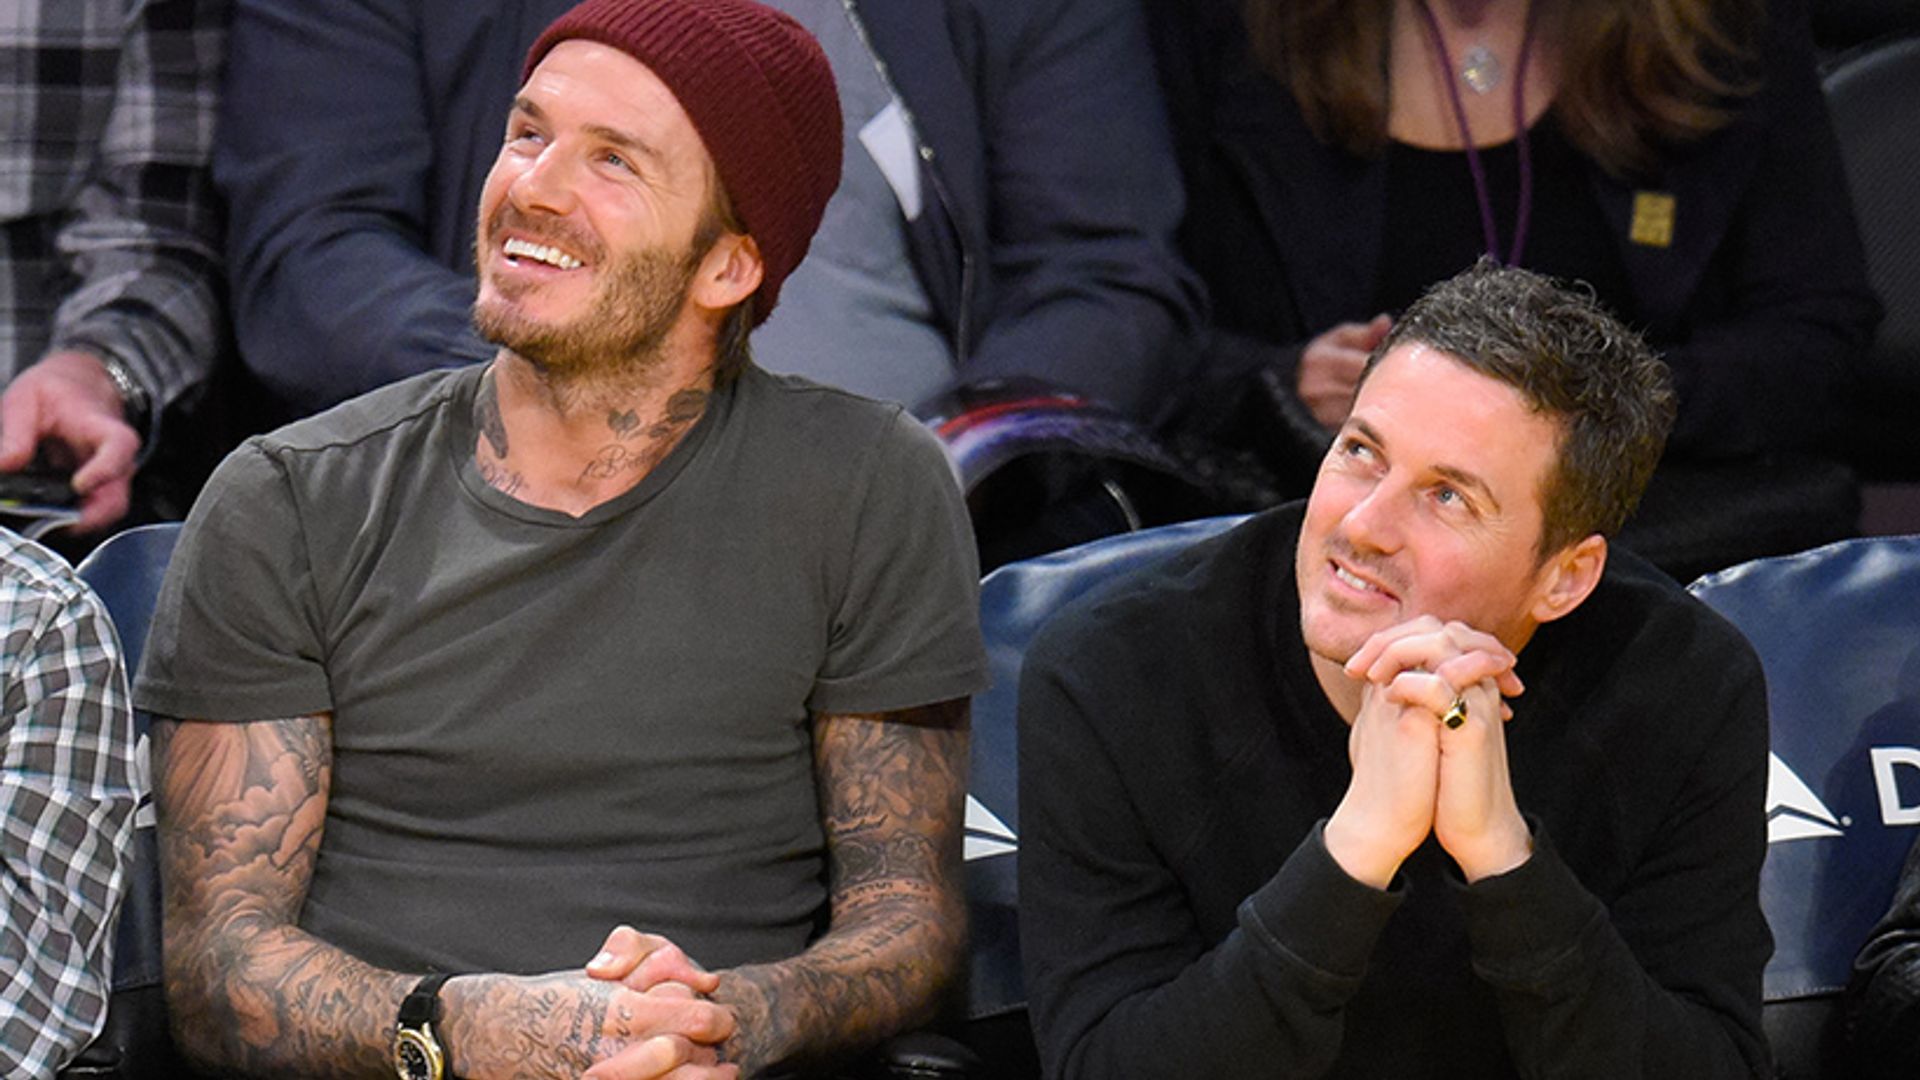 David Beckham and Dave Gardner enjoy boys' night out at basketball